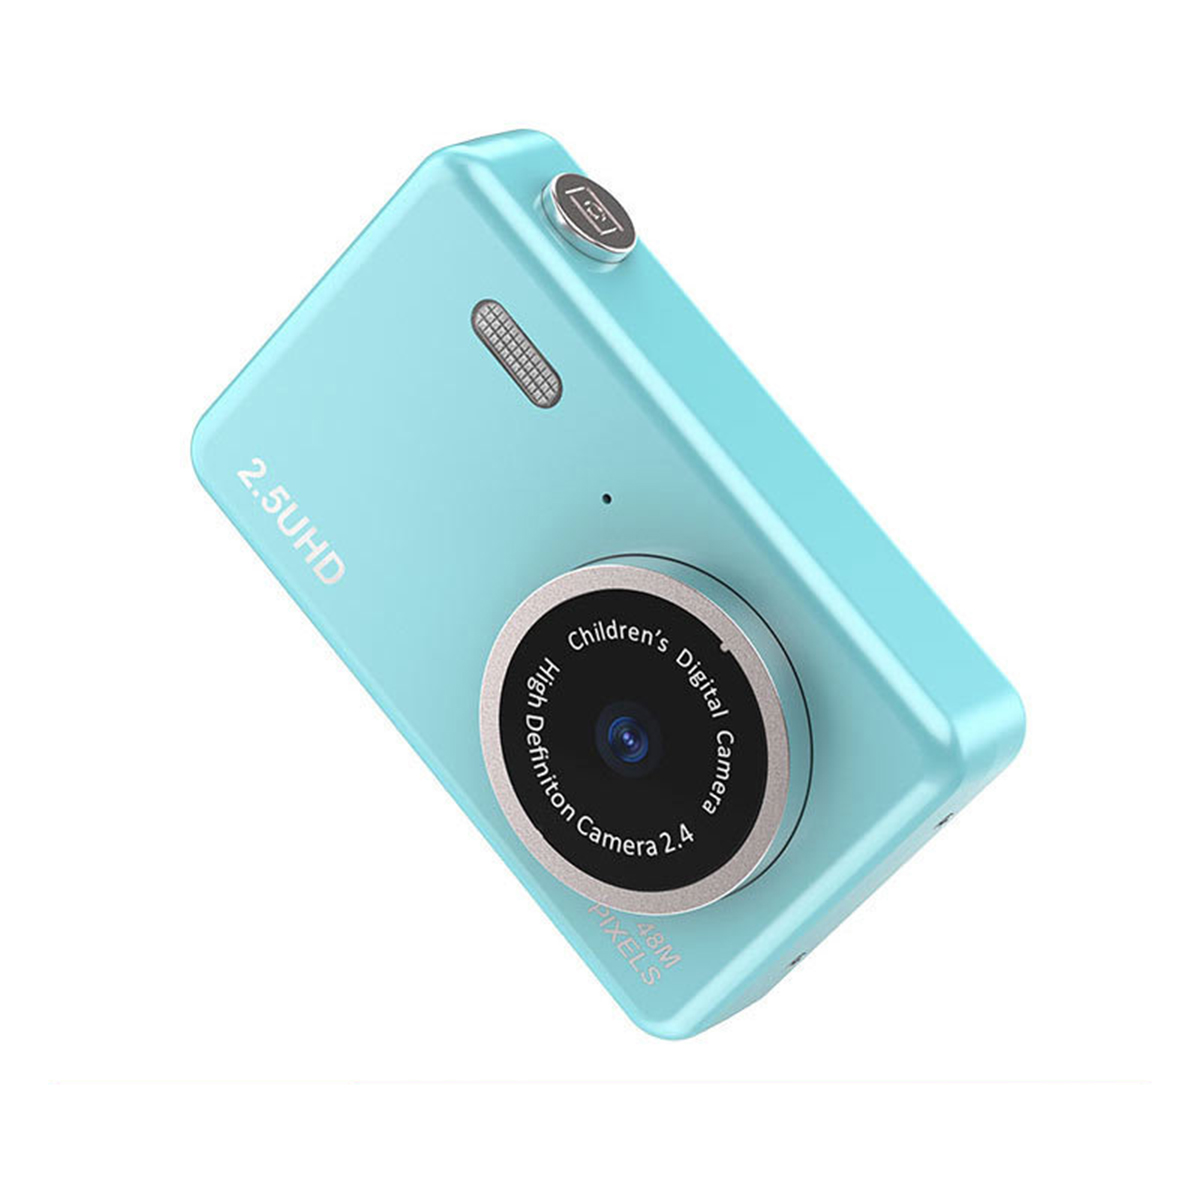 SYNTEK Studenten-Digitalkamera - Duale LCD- Filter intelligente Front- und Rückkameras, blau, Digitalkamera